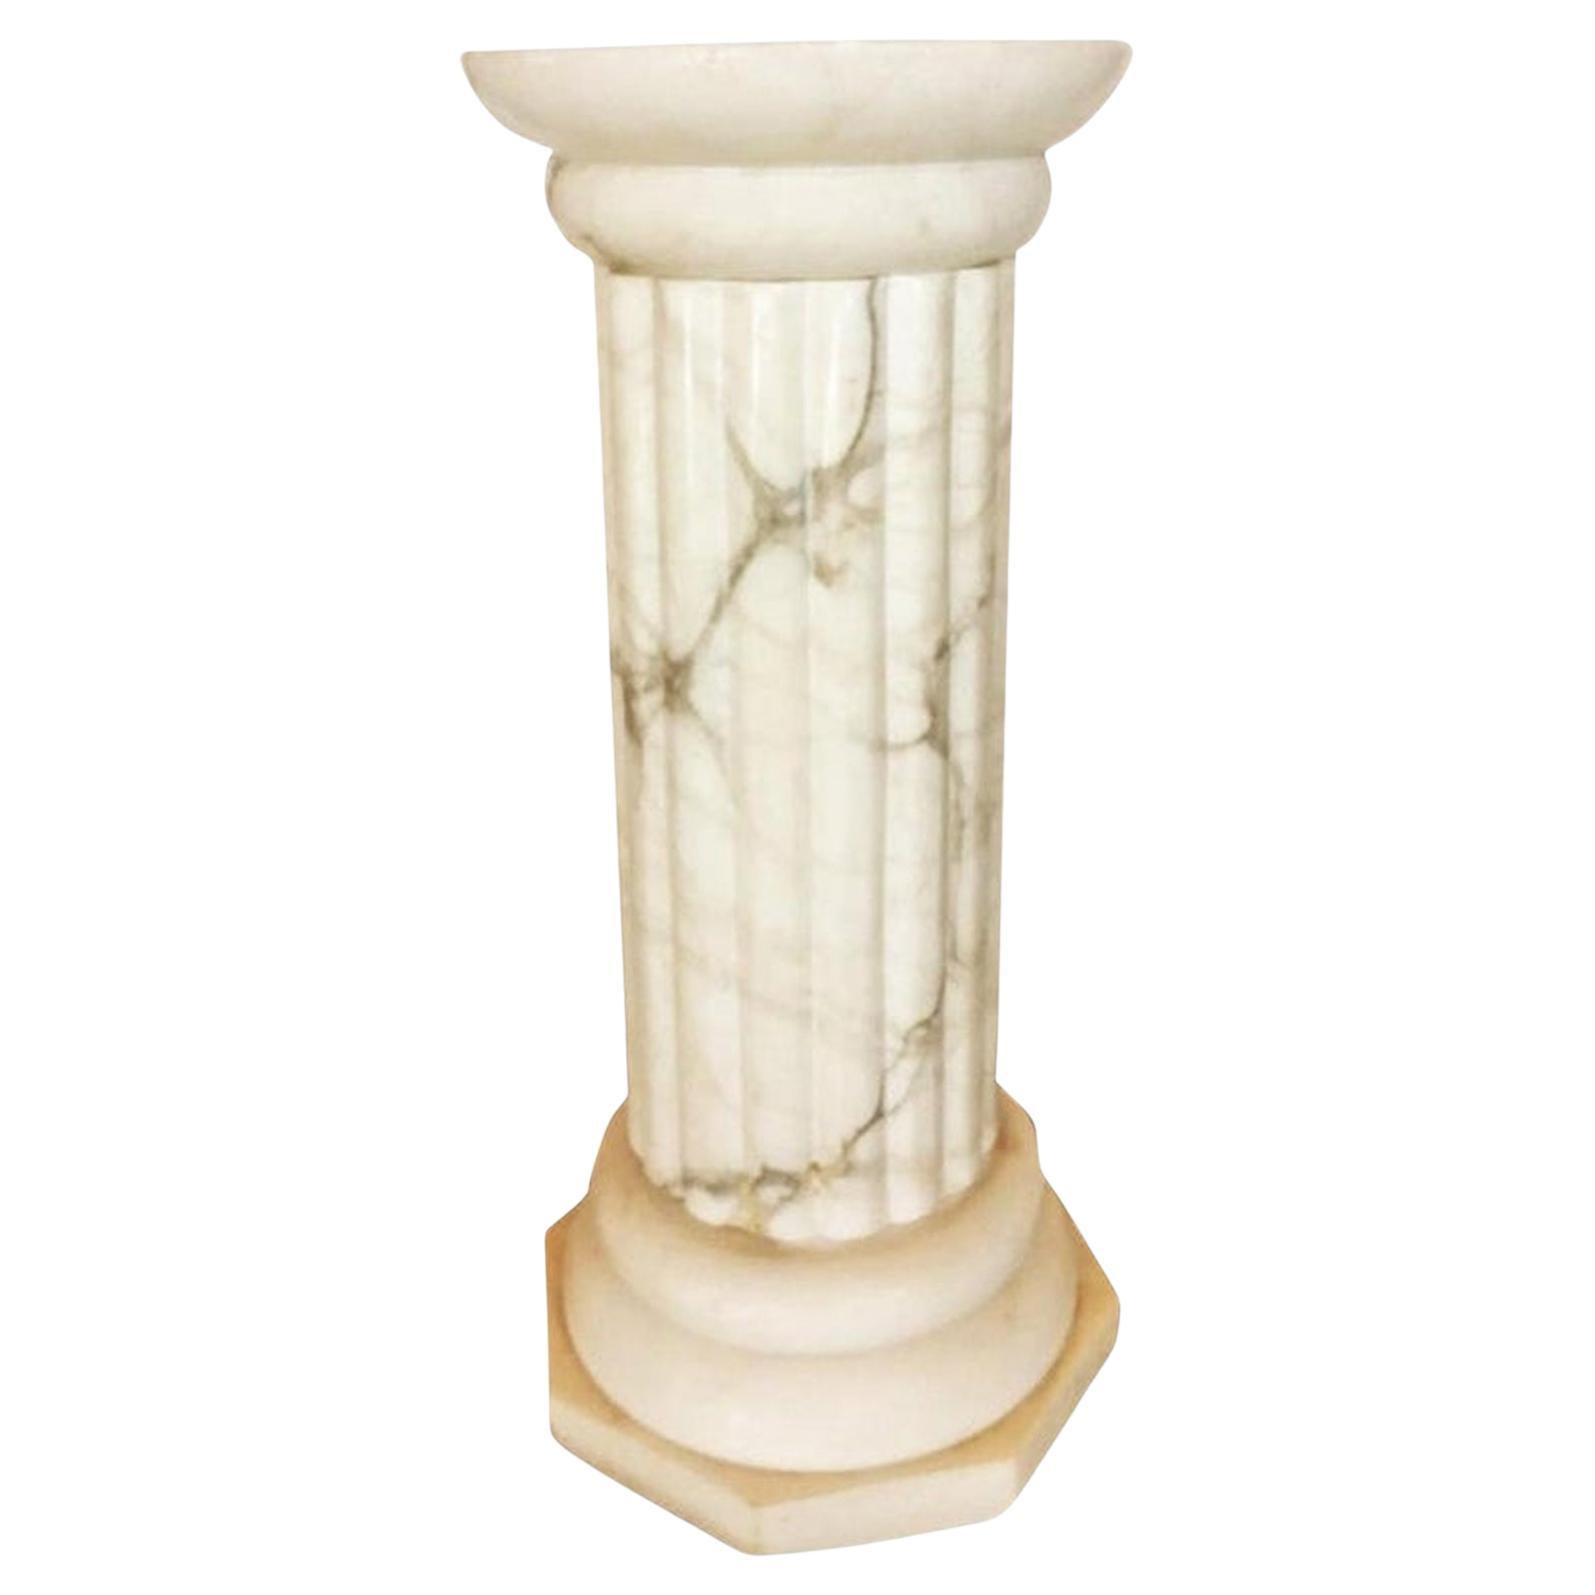 Flor Lampe / Sockel 
Alabaster sehr gut erhalten, ohne Flecken oder Farbveränderungen
 
Blumenlampe, Sockel beleuchtet  Alabastermarmor Weiß Griechische Kolonnenform, Italien

Italienische Stehlampe aus geschnitztem weißem Alabaster mit